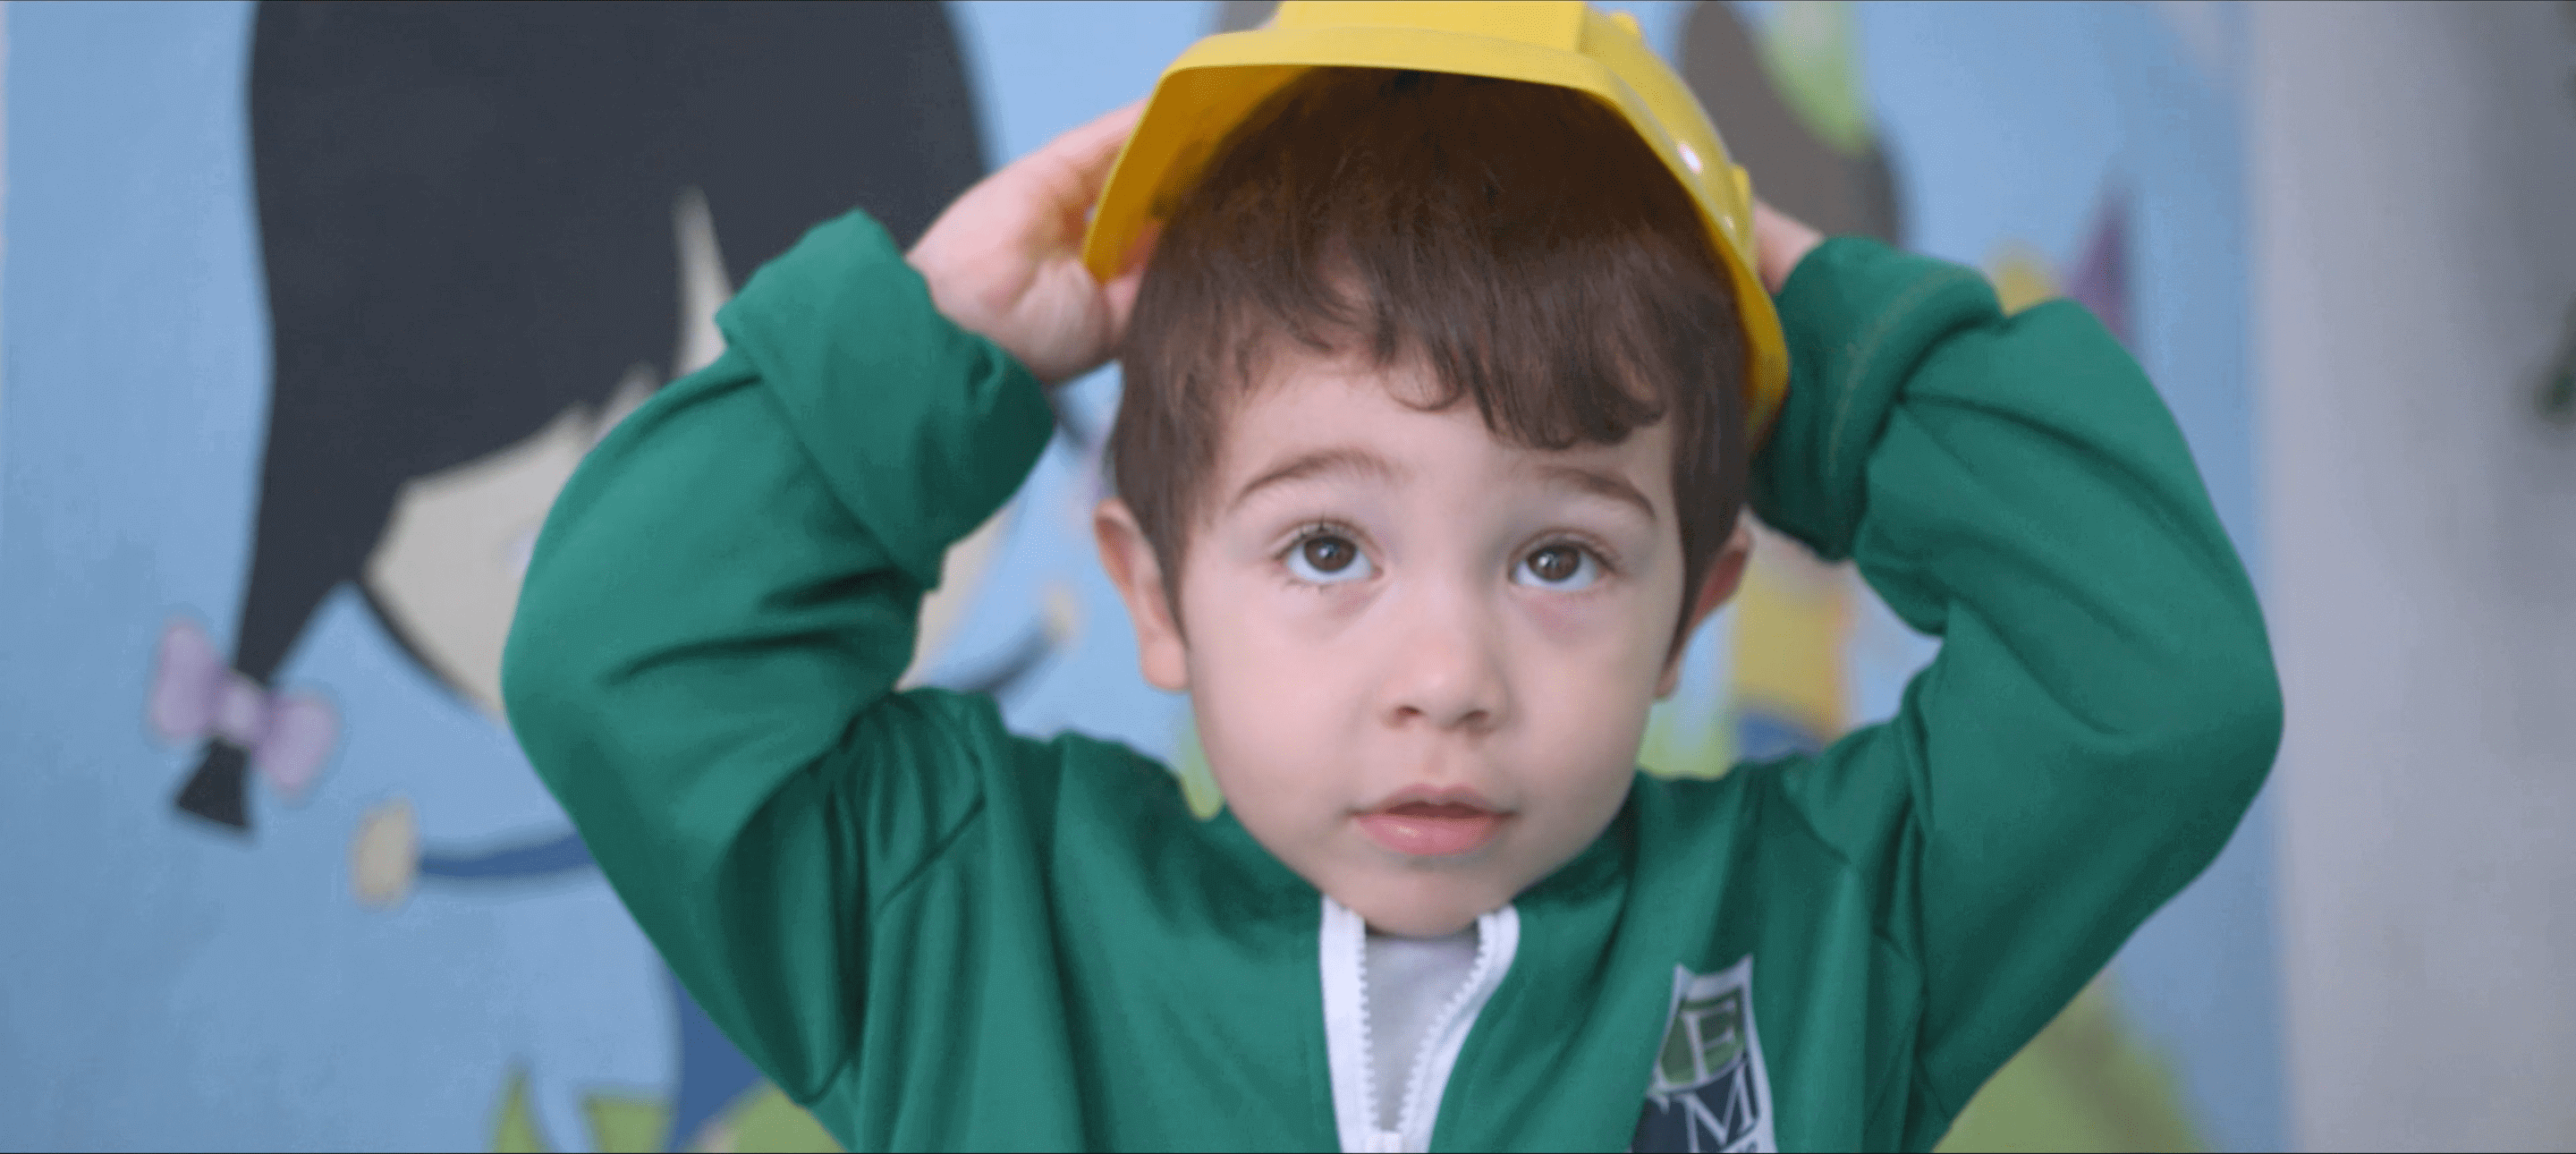 Imagem de menino com chapéu amarelo.